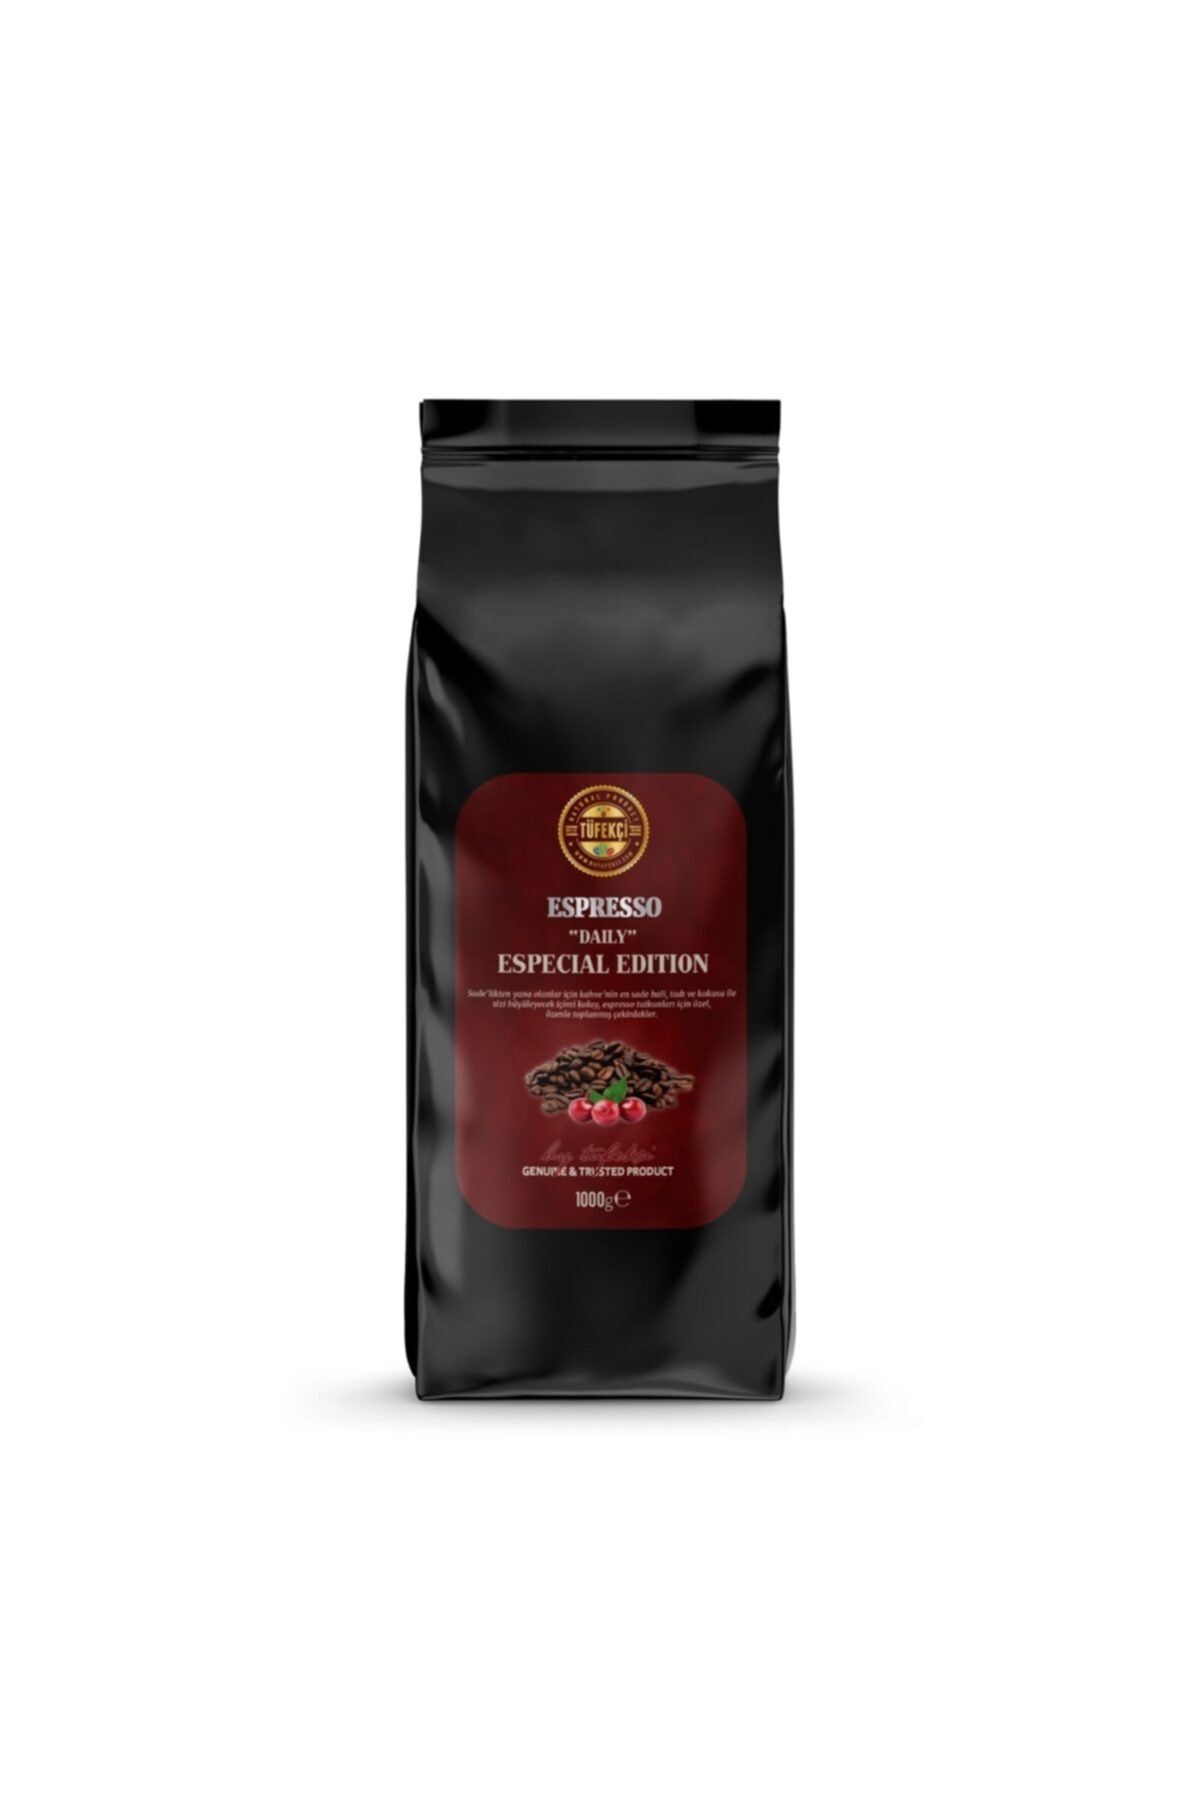 By Tüfekçi Espresso Daily Çekirdek Kahve Yüksek Çekirdek Kalitesi 18/19 Elek Medium Roast 1000 gr